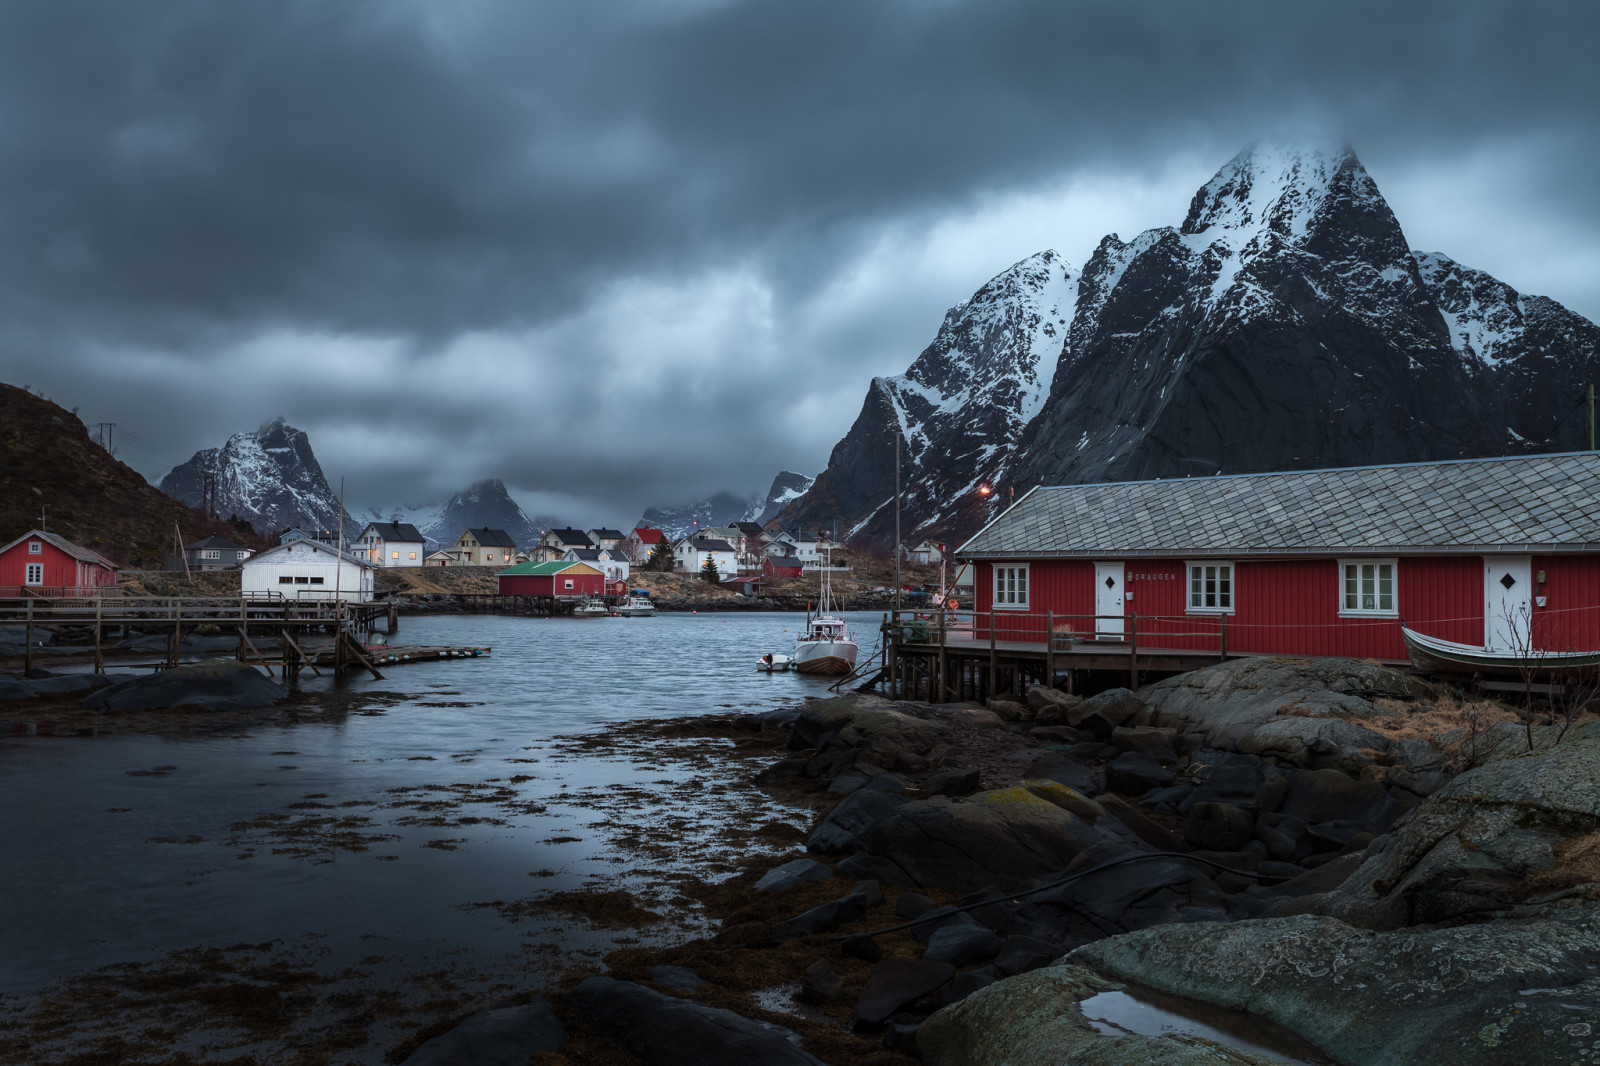 雪, 乌云, 山脉, 挪威, 家, 船, 风暴, 村